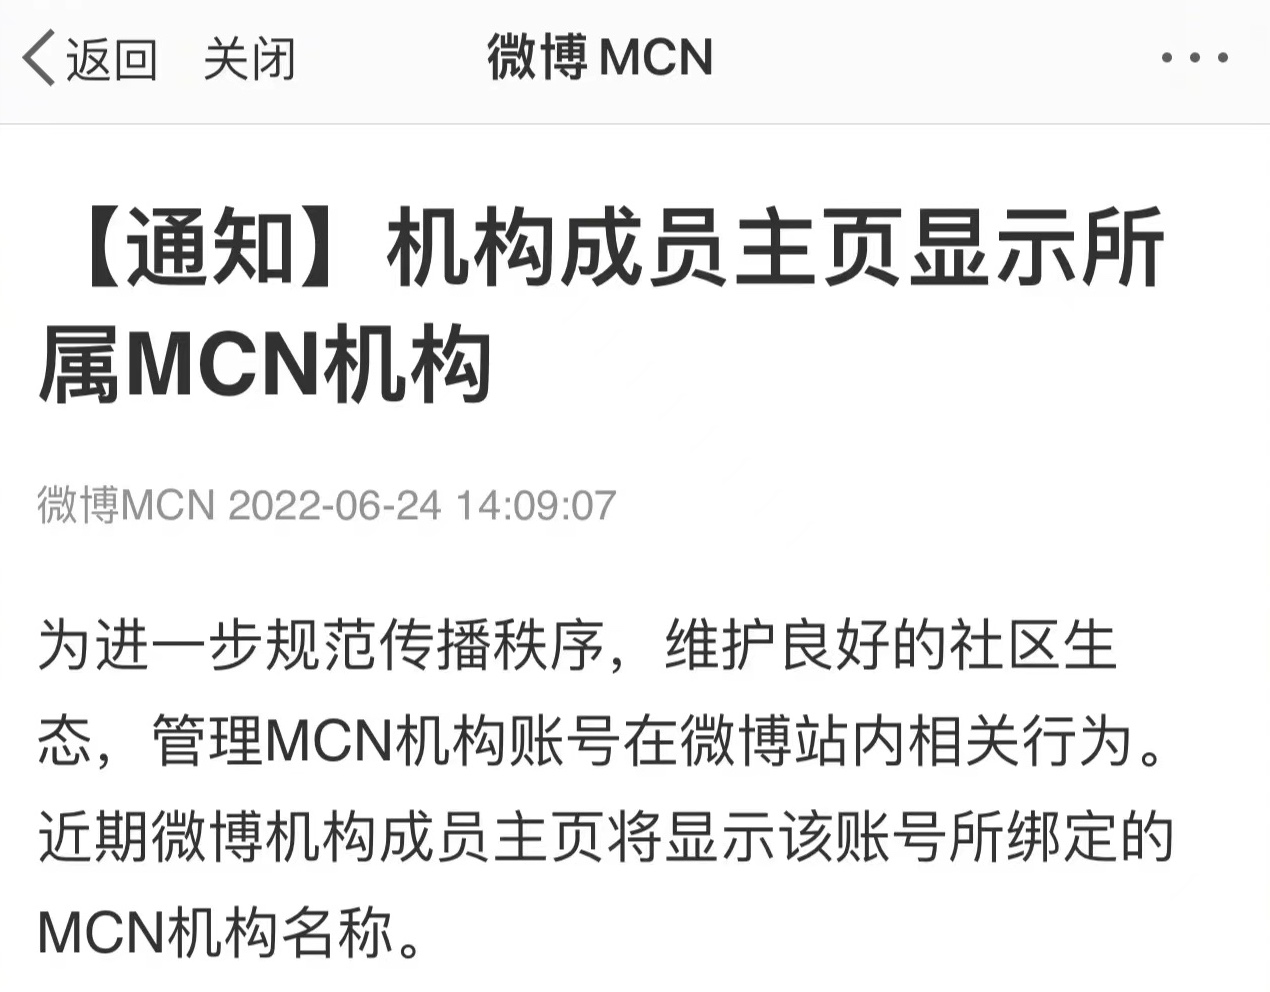 继抖音后 微博也将在主页显示MCN机构名称